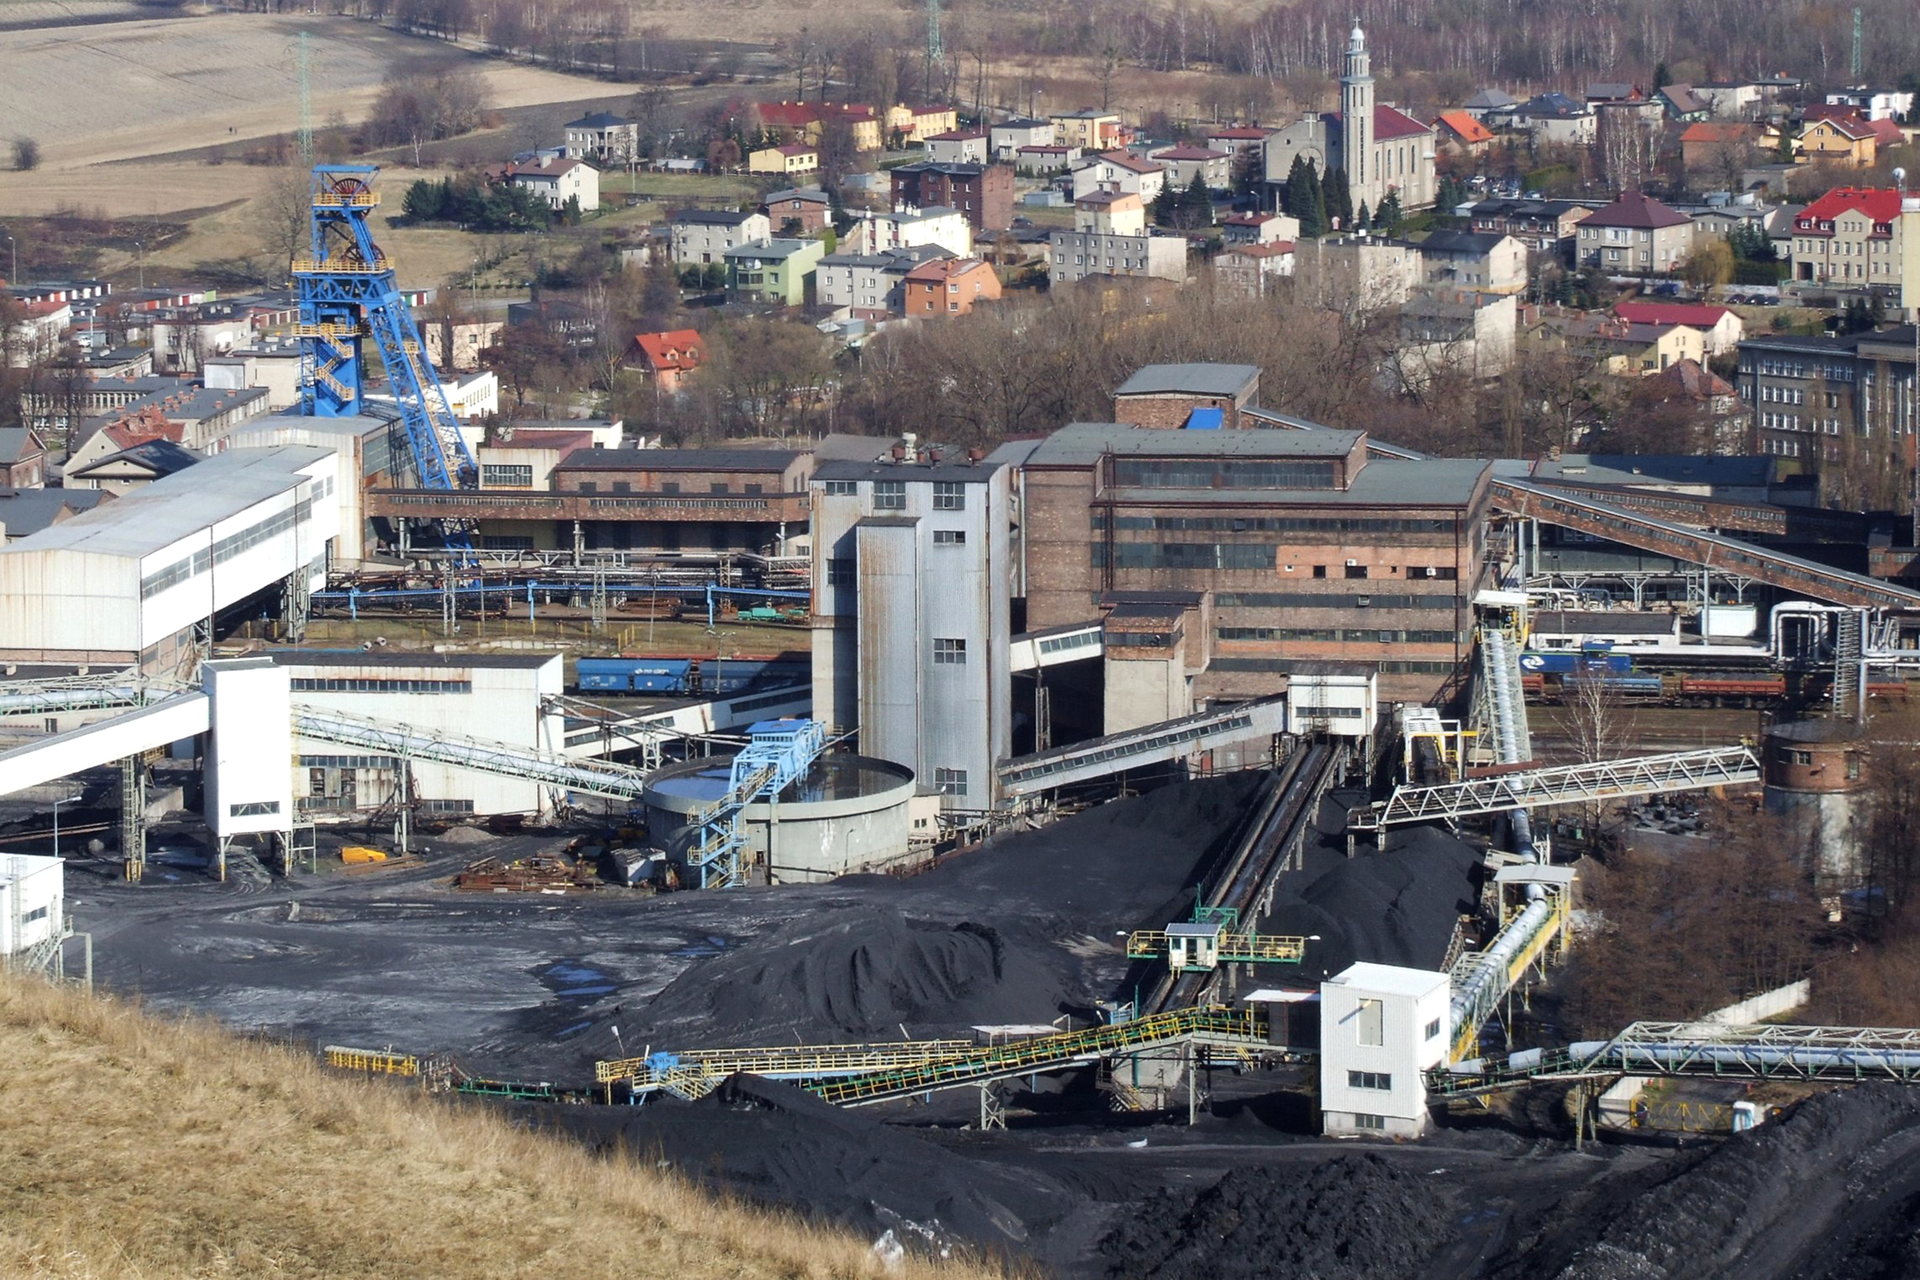 Fotografia prezentująca teren kopalni węgla kamiennego. Widoczne liczne zabudowania oraz hałdy węgła.